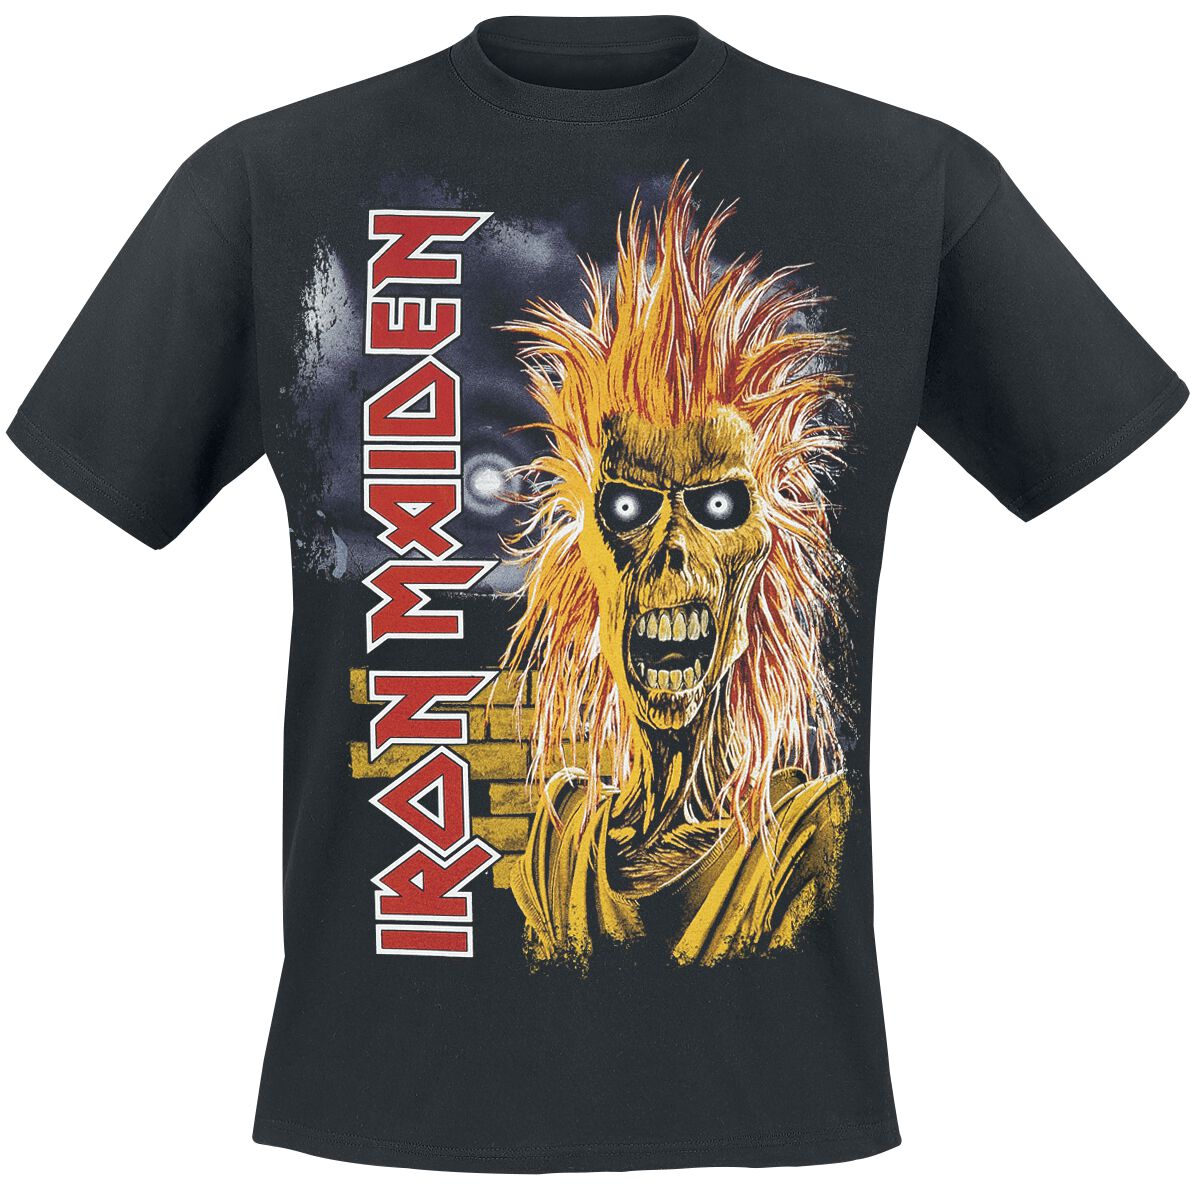 Iron Maiden 1st Album Tracklist T-Shirt schwarz in S